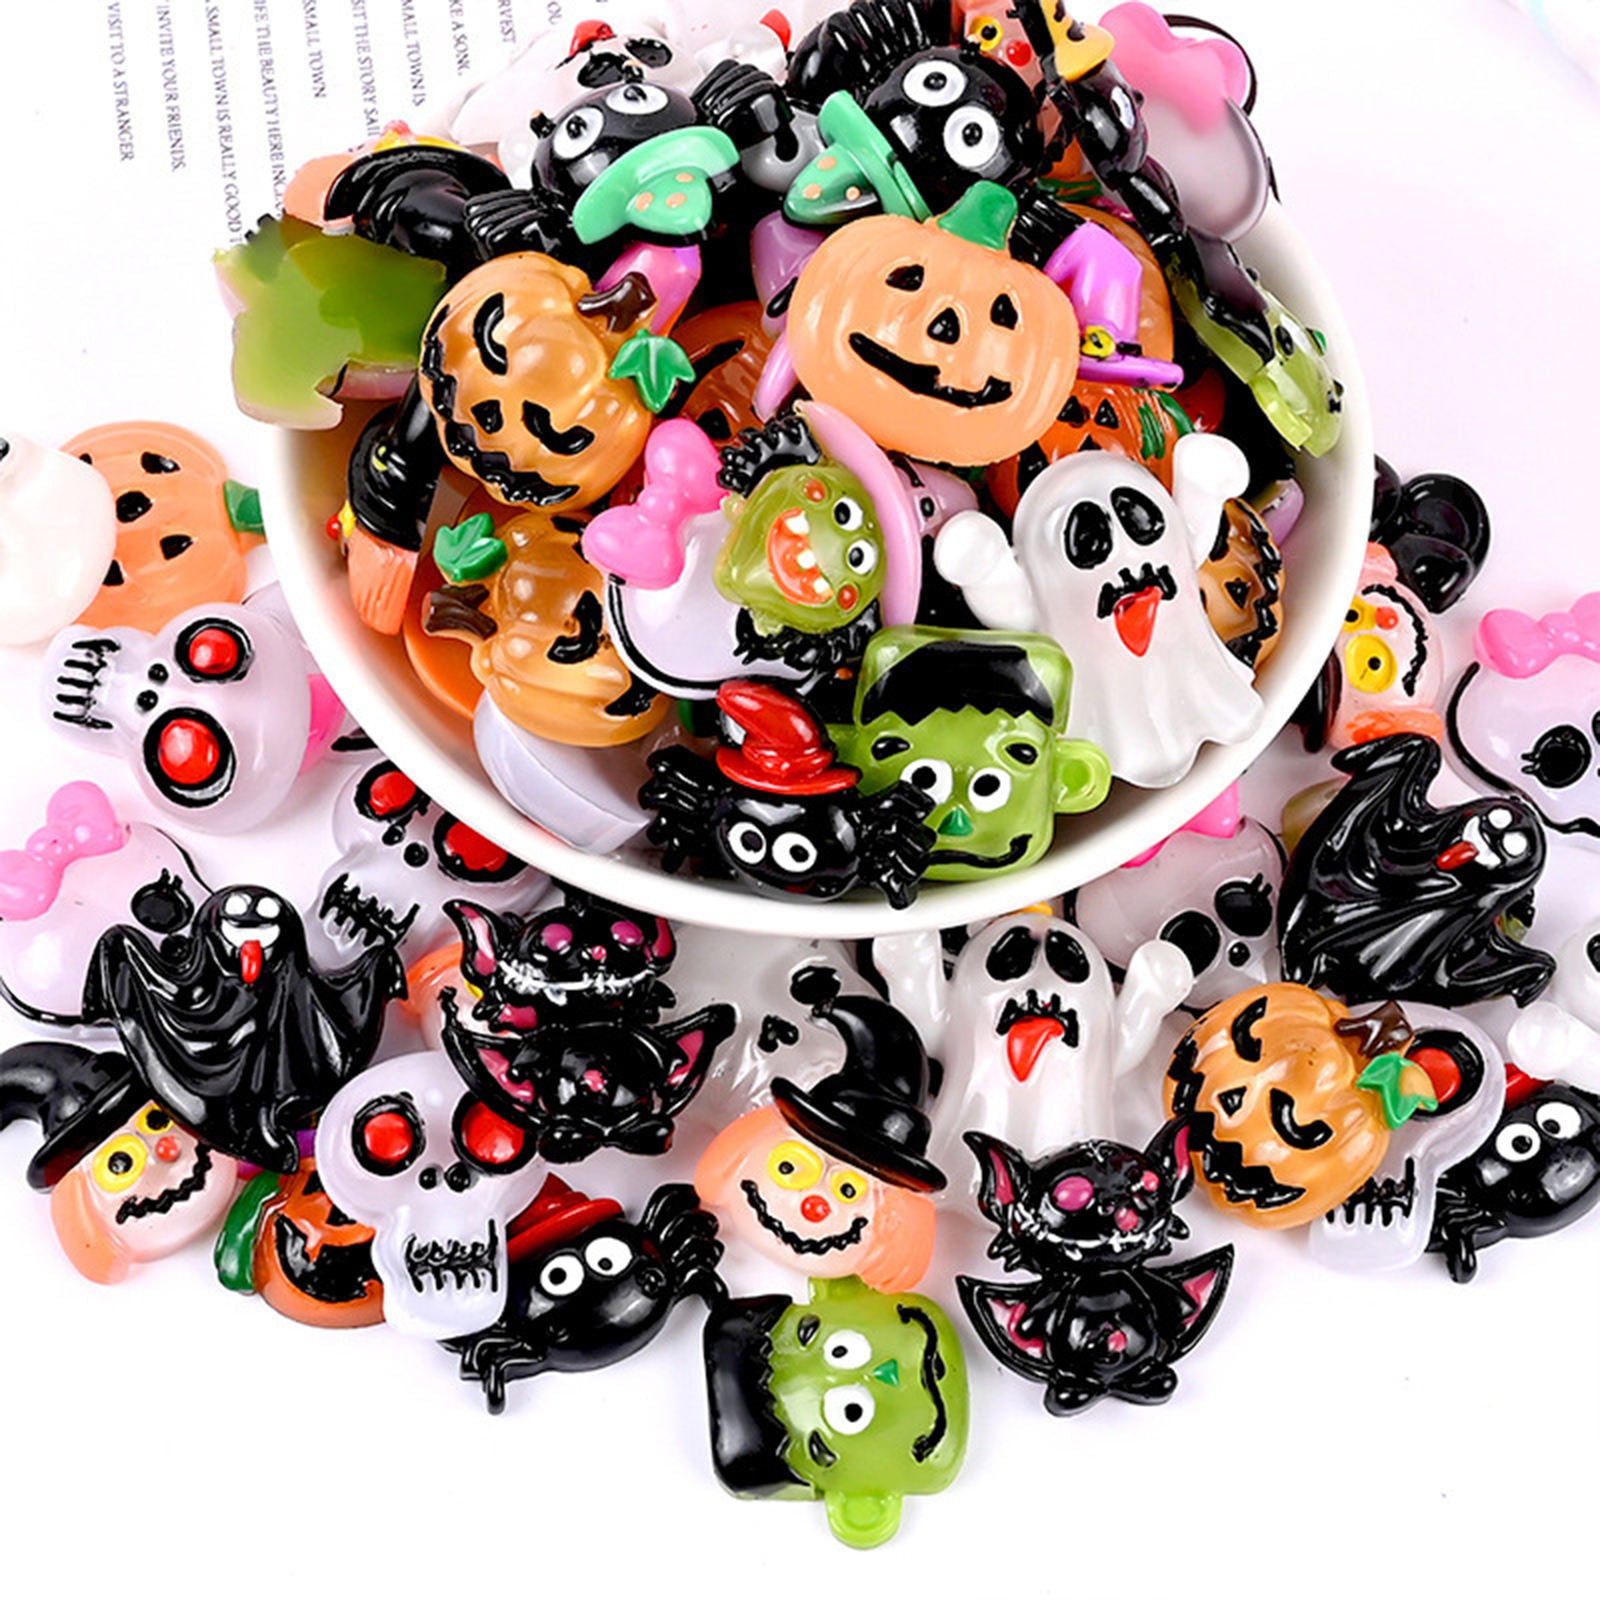 30Pcs Mixed Lot Halloween Embellishments Cabochons Scrapbook Accessories